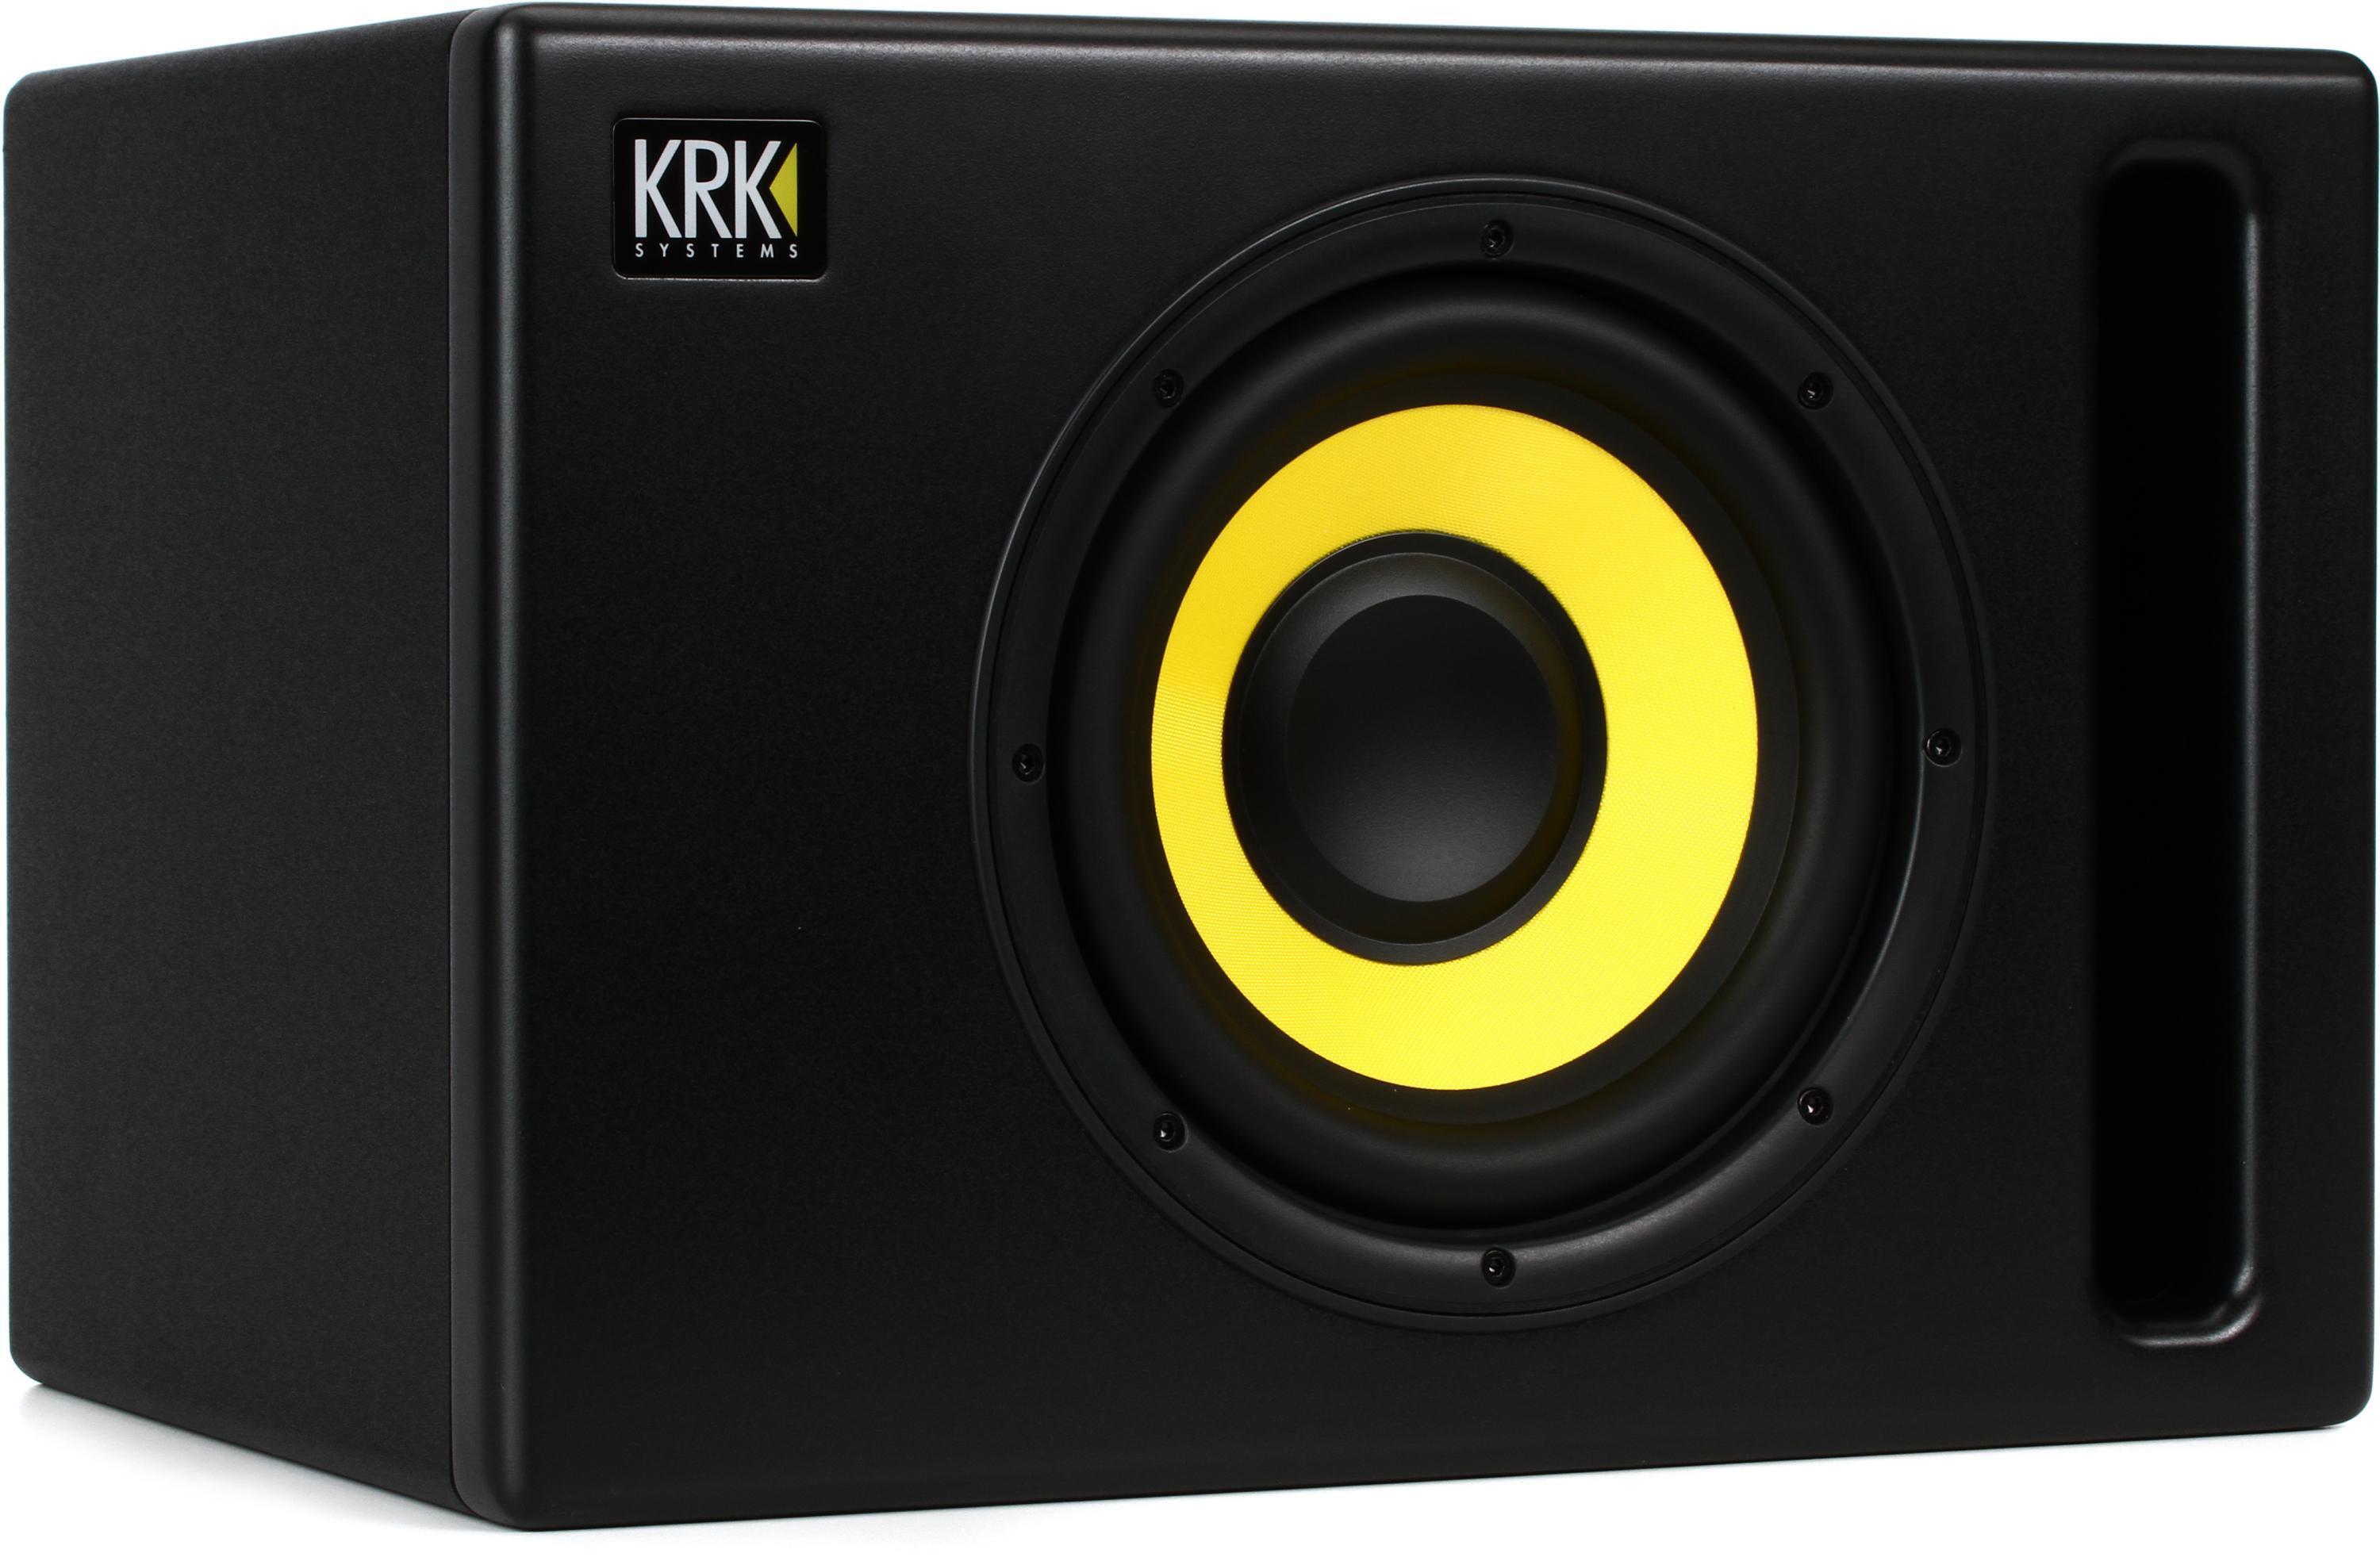 Bundled Item: KRK S8.4 8 inch Powered Studio Subwoofer